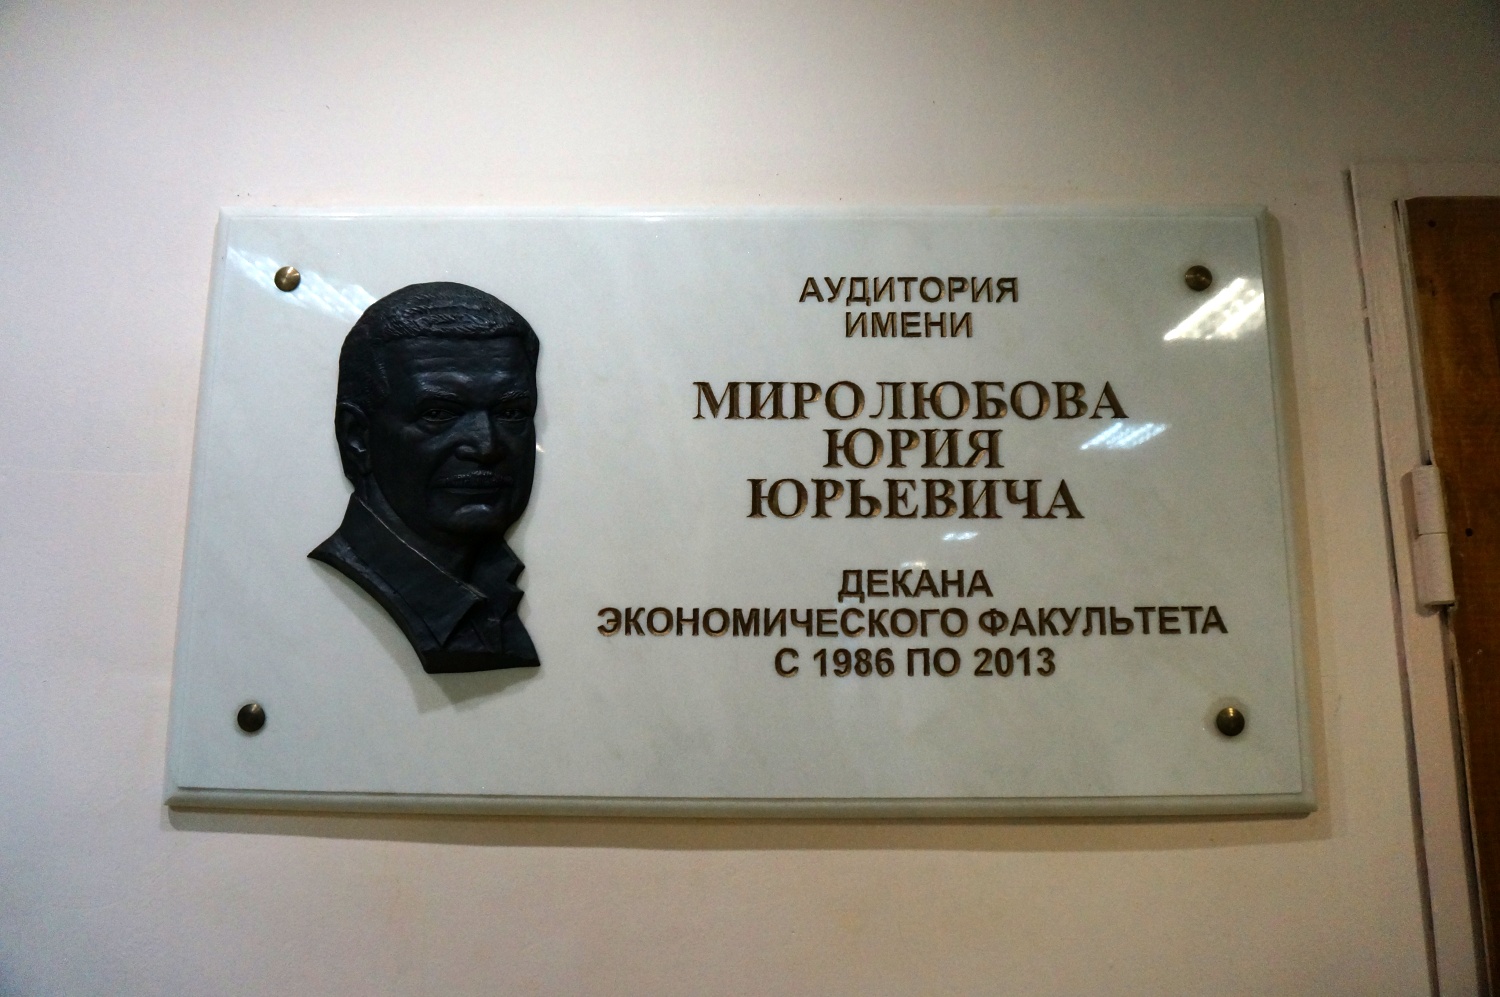 Perm, Улица Дзержинского, 2А. Perm — Memorial plaques